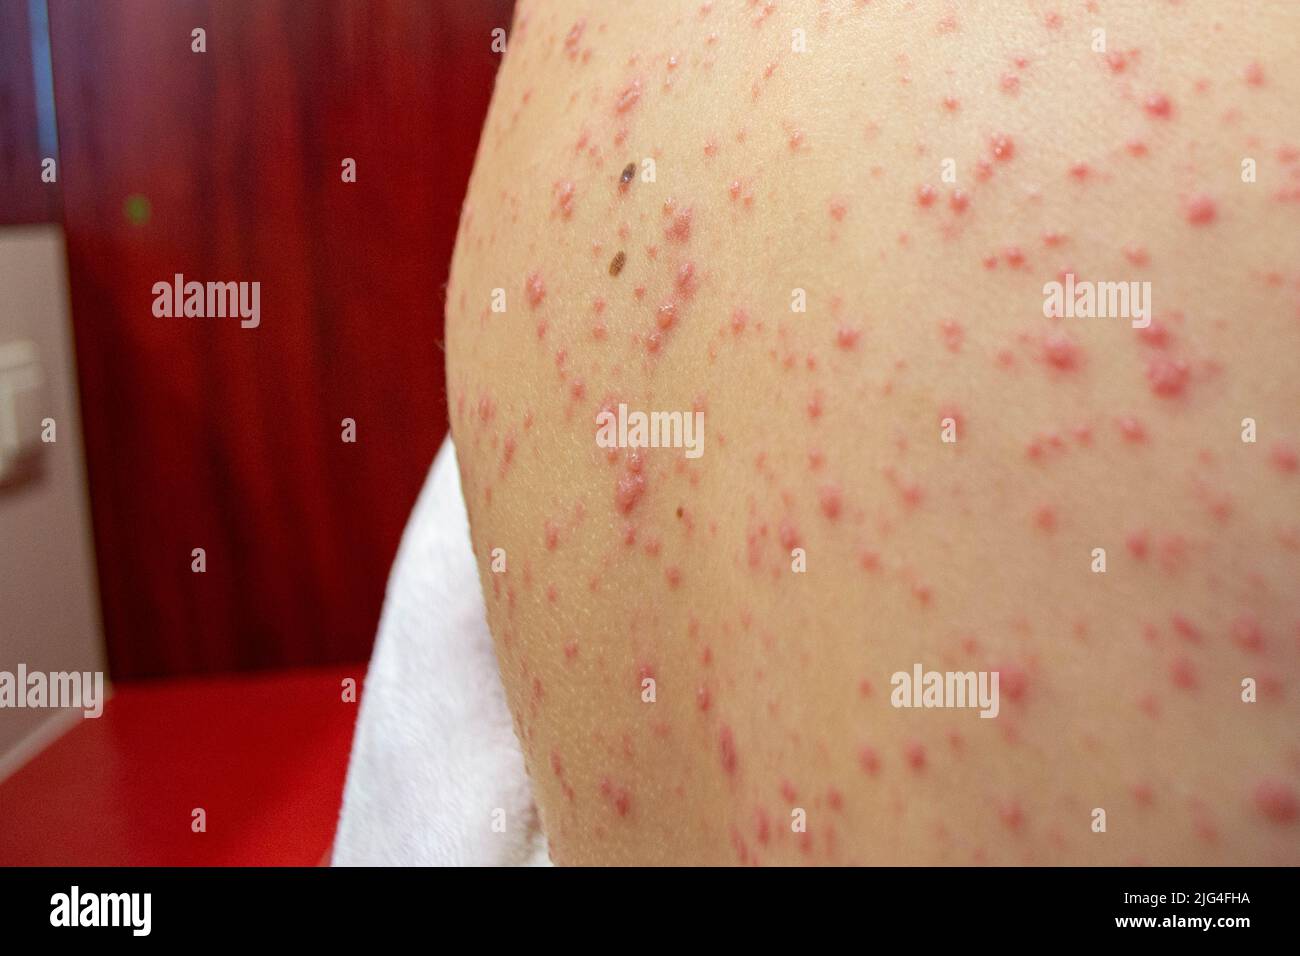 Virus de la varicelle ou éruption de bulle de Chickenpox sur l'enfant Banque D'Images